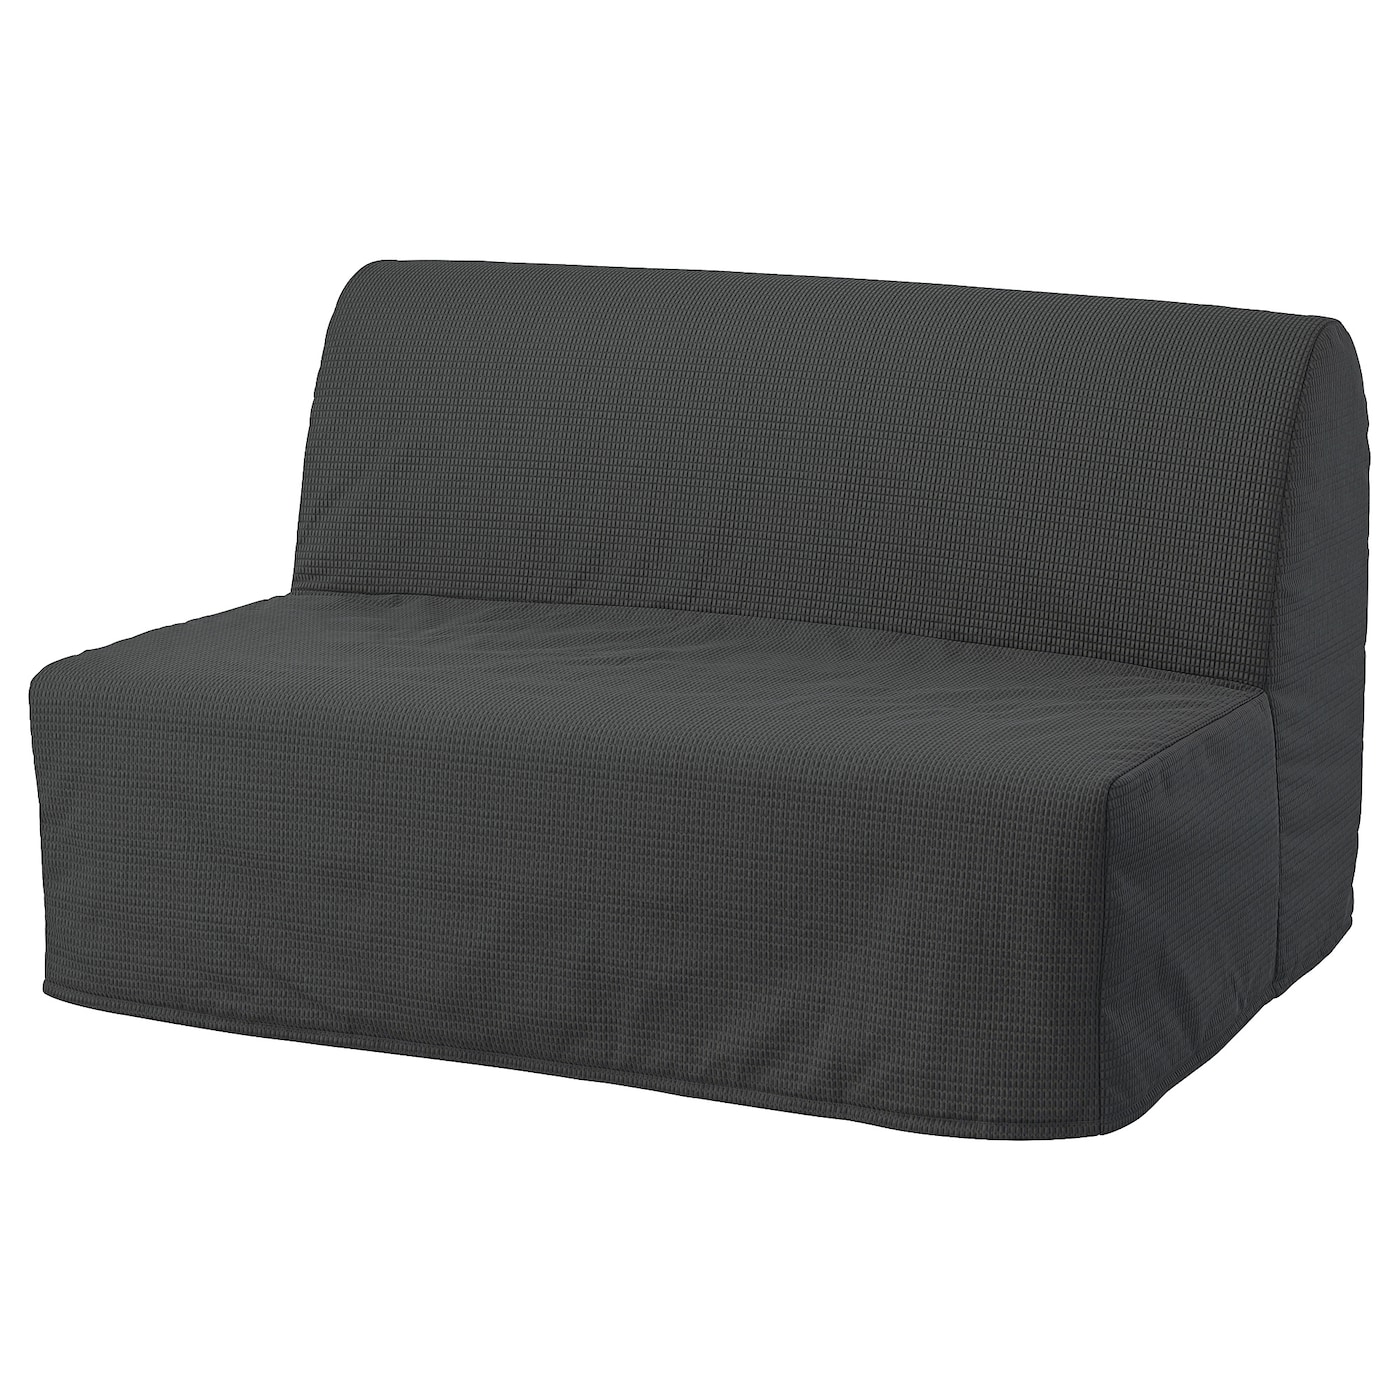 мультяшный матрас ленивый диван кровать подходит для детей татами маты креативный маленький диван кровать стул современная мебель для ЛИКСЕЛЕ МУРБО 2 раскладных дивана-кровати, Вансбро темно-серый LYCKSELE MURBO IKEA